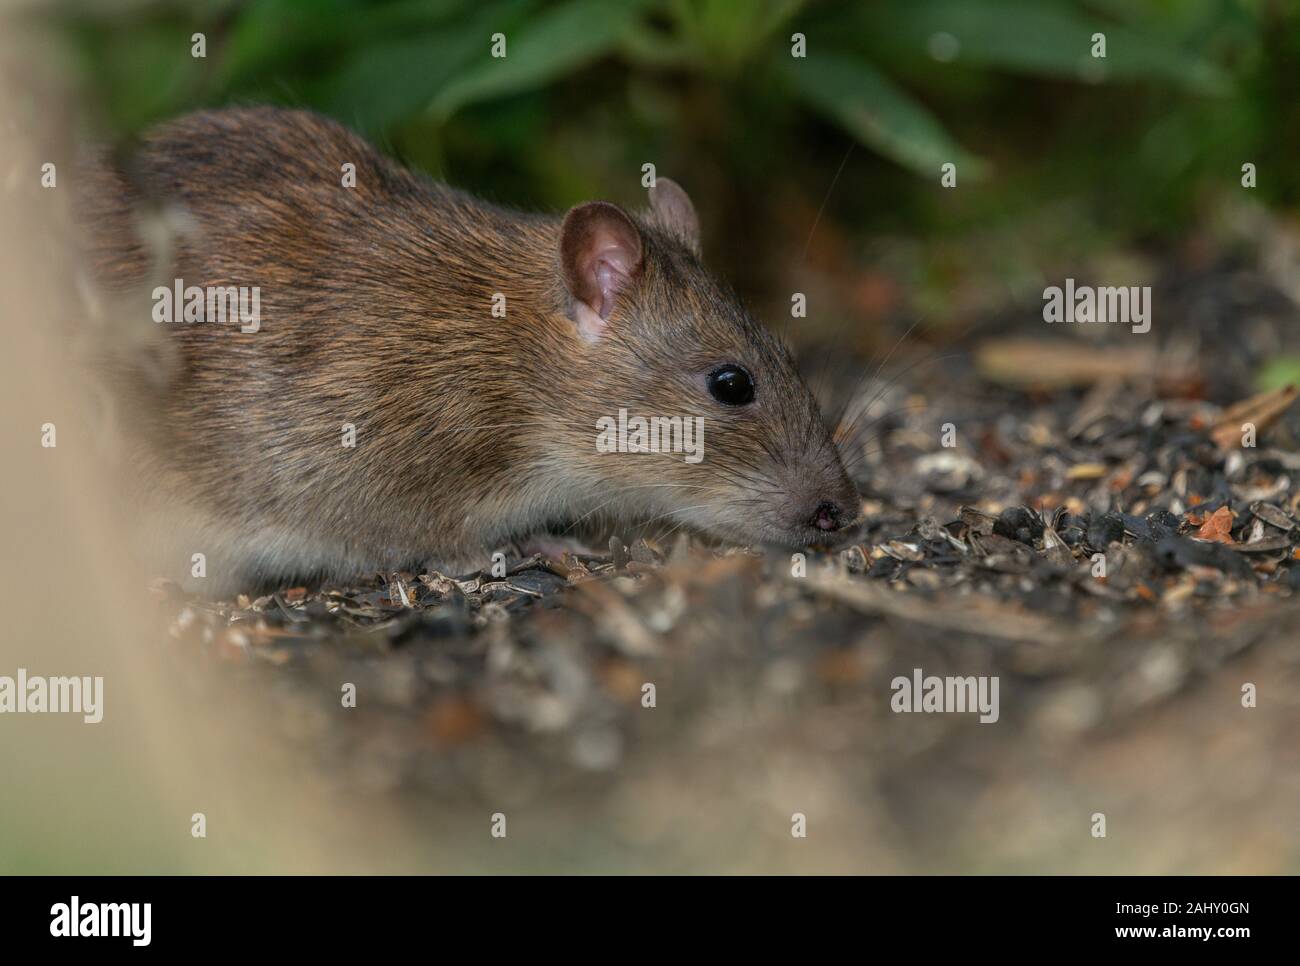 Brown, rata Rattus norvegicus, alimentando el jardín debajo de un pájaro, en Dorset. Foto de stock